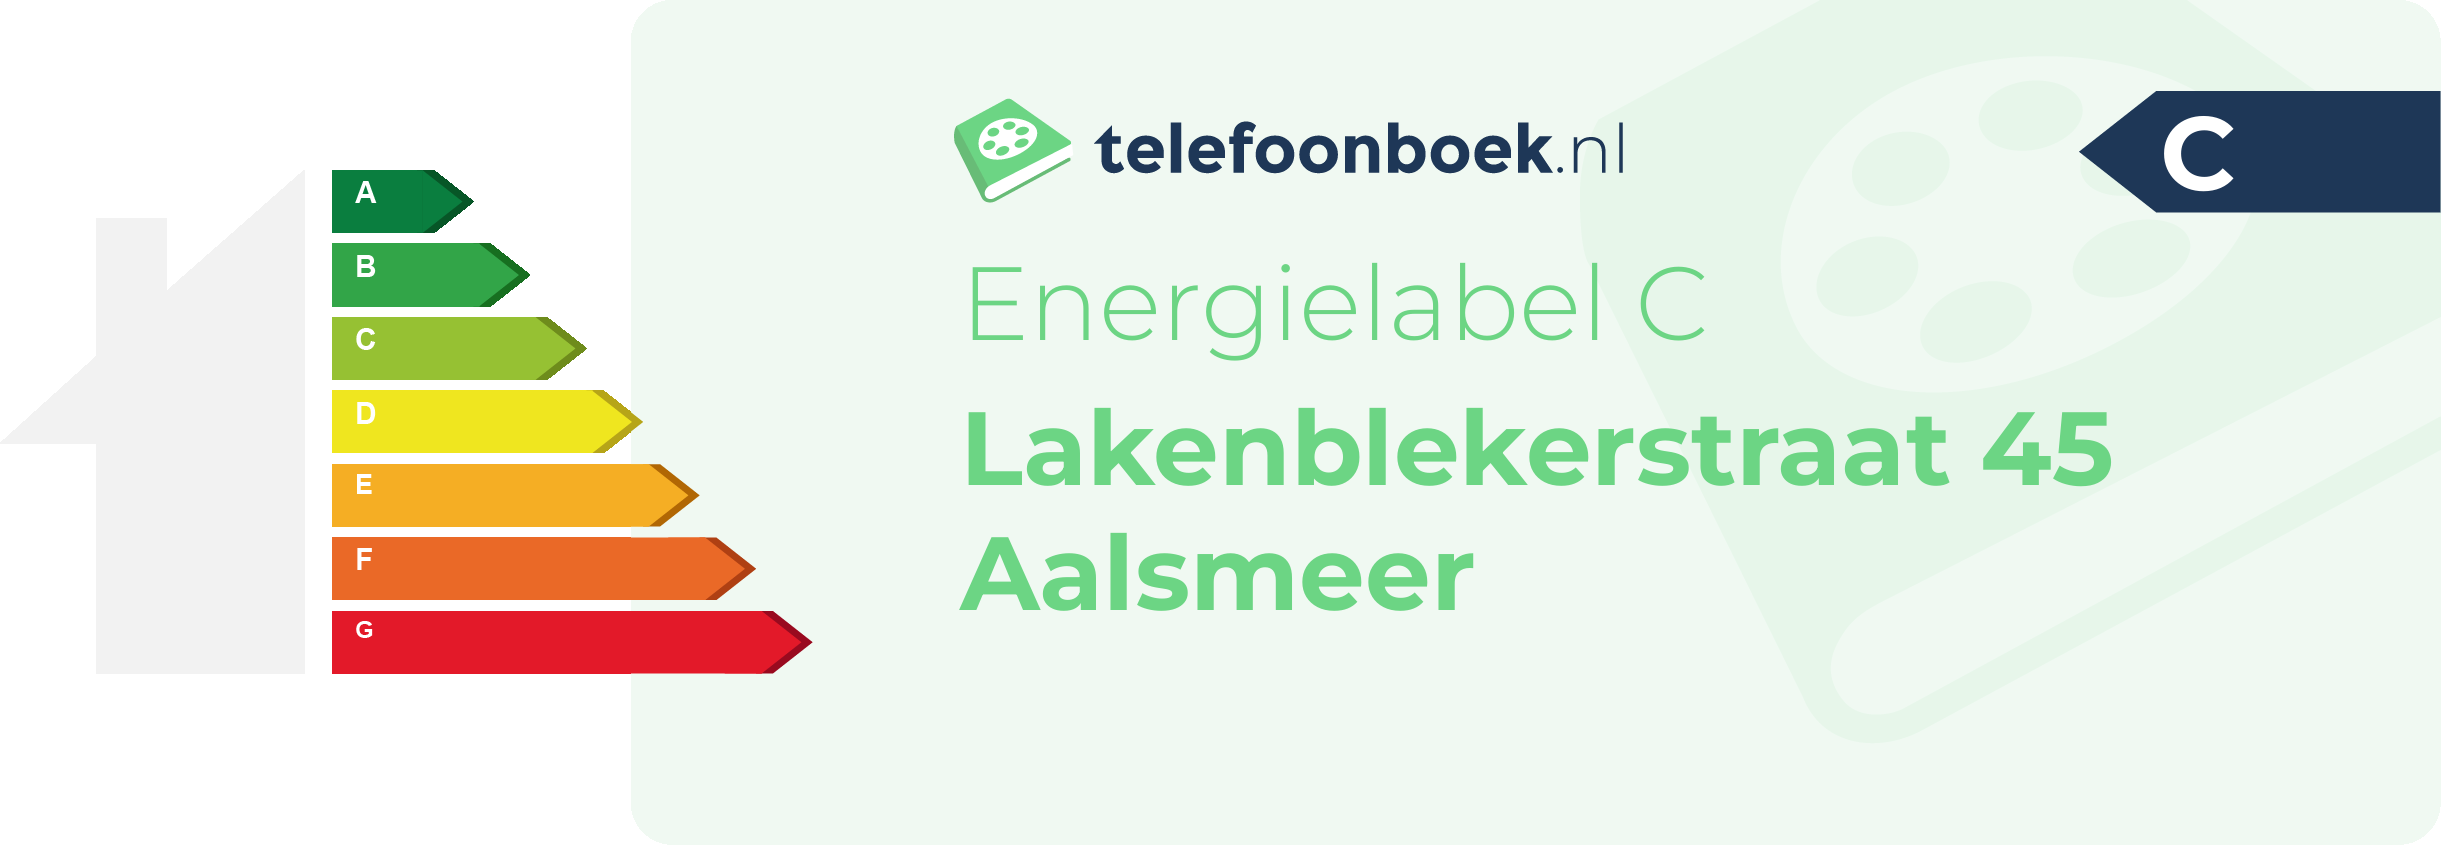 Energielabel Lakenblekerstraat 45 Aalsmeer